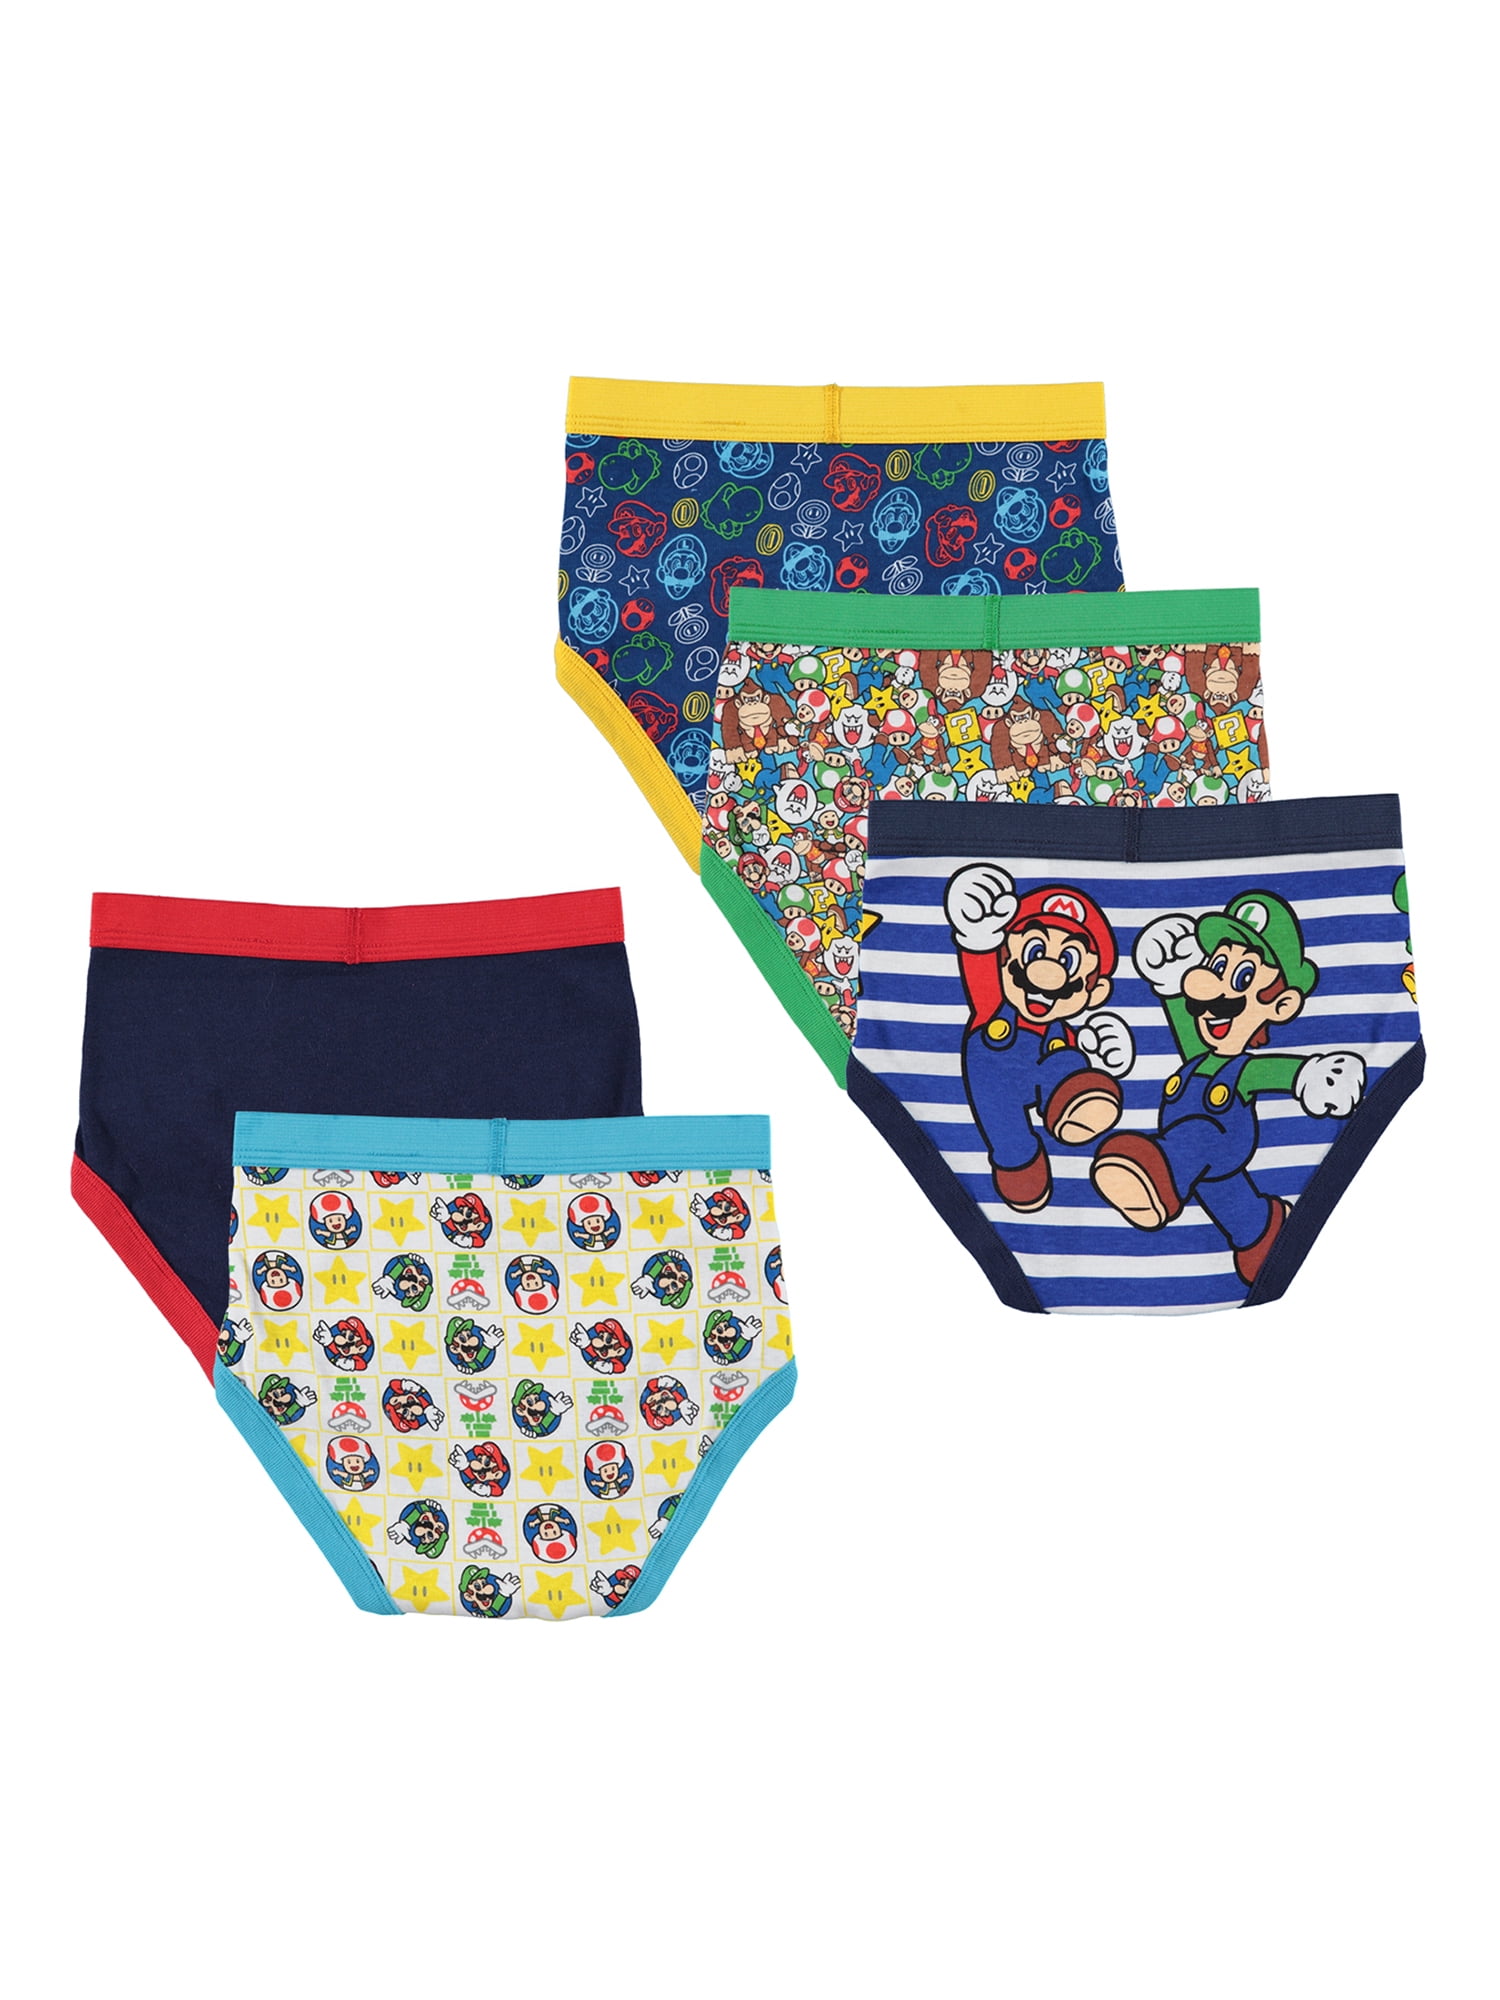 Mario Bros. Boys 4-6 Underwear, 5 Pack Briefs 